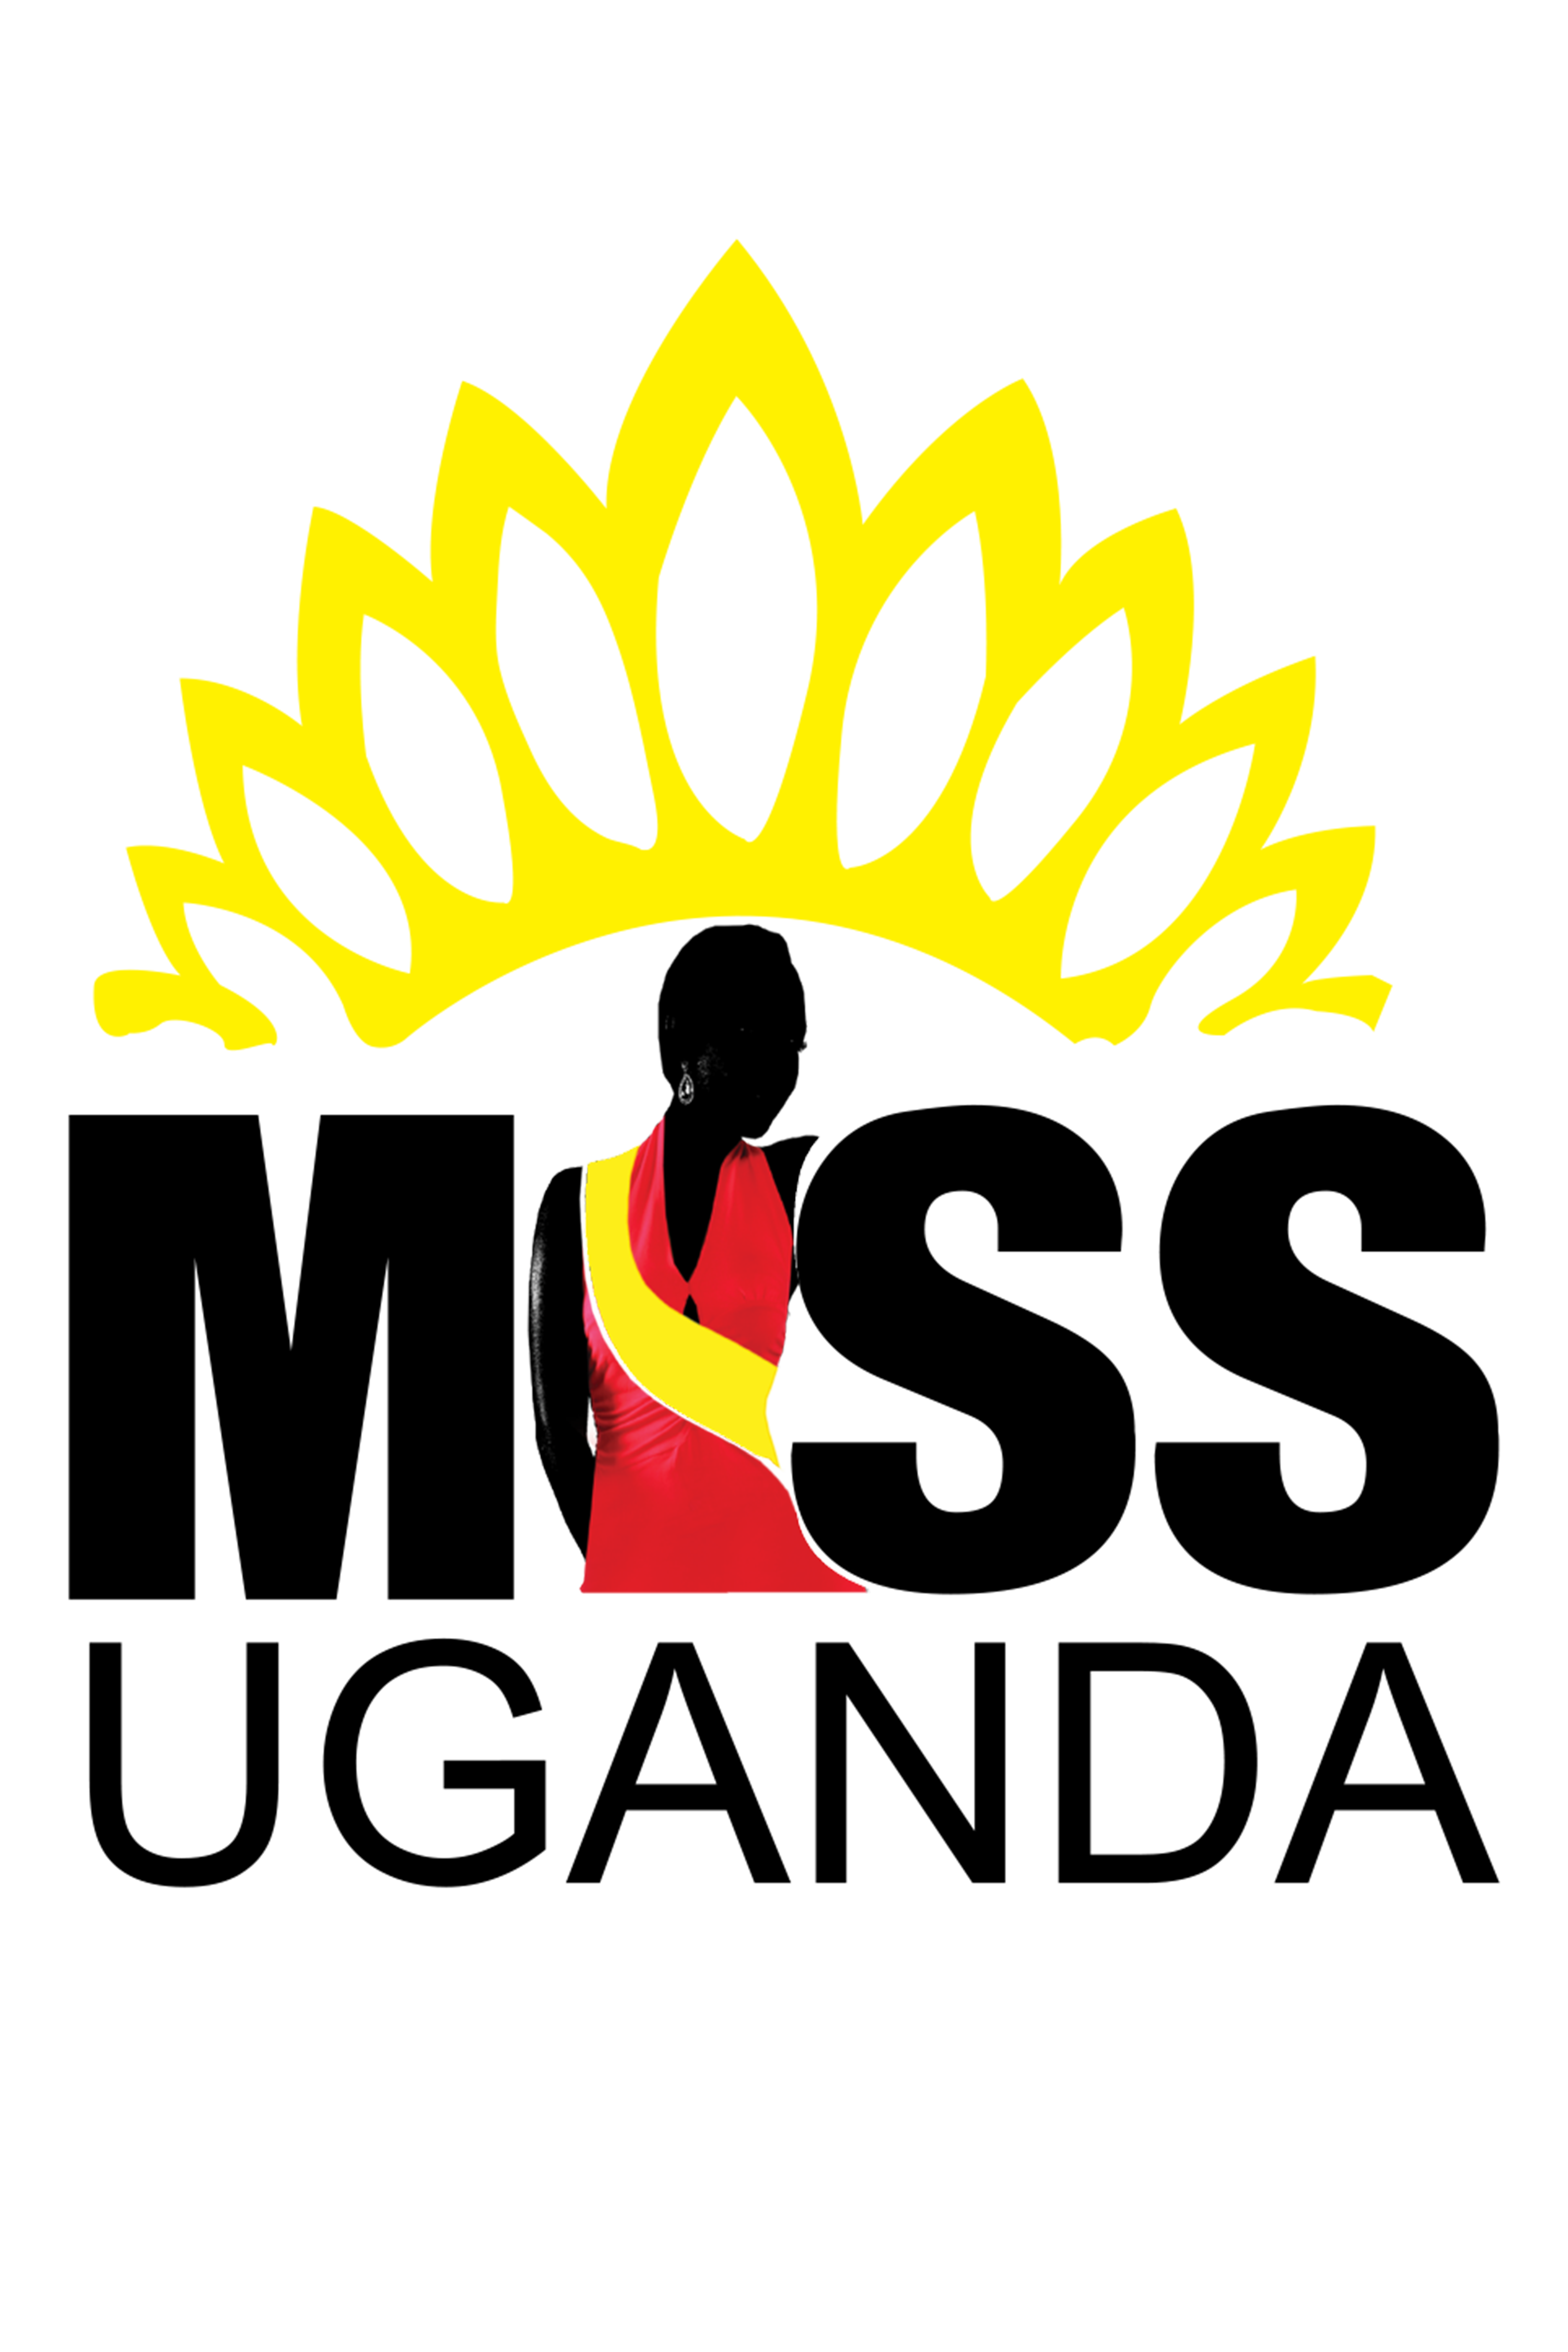 Miss Uganda Logo